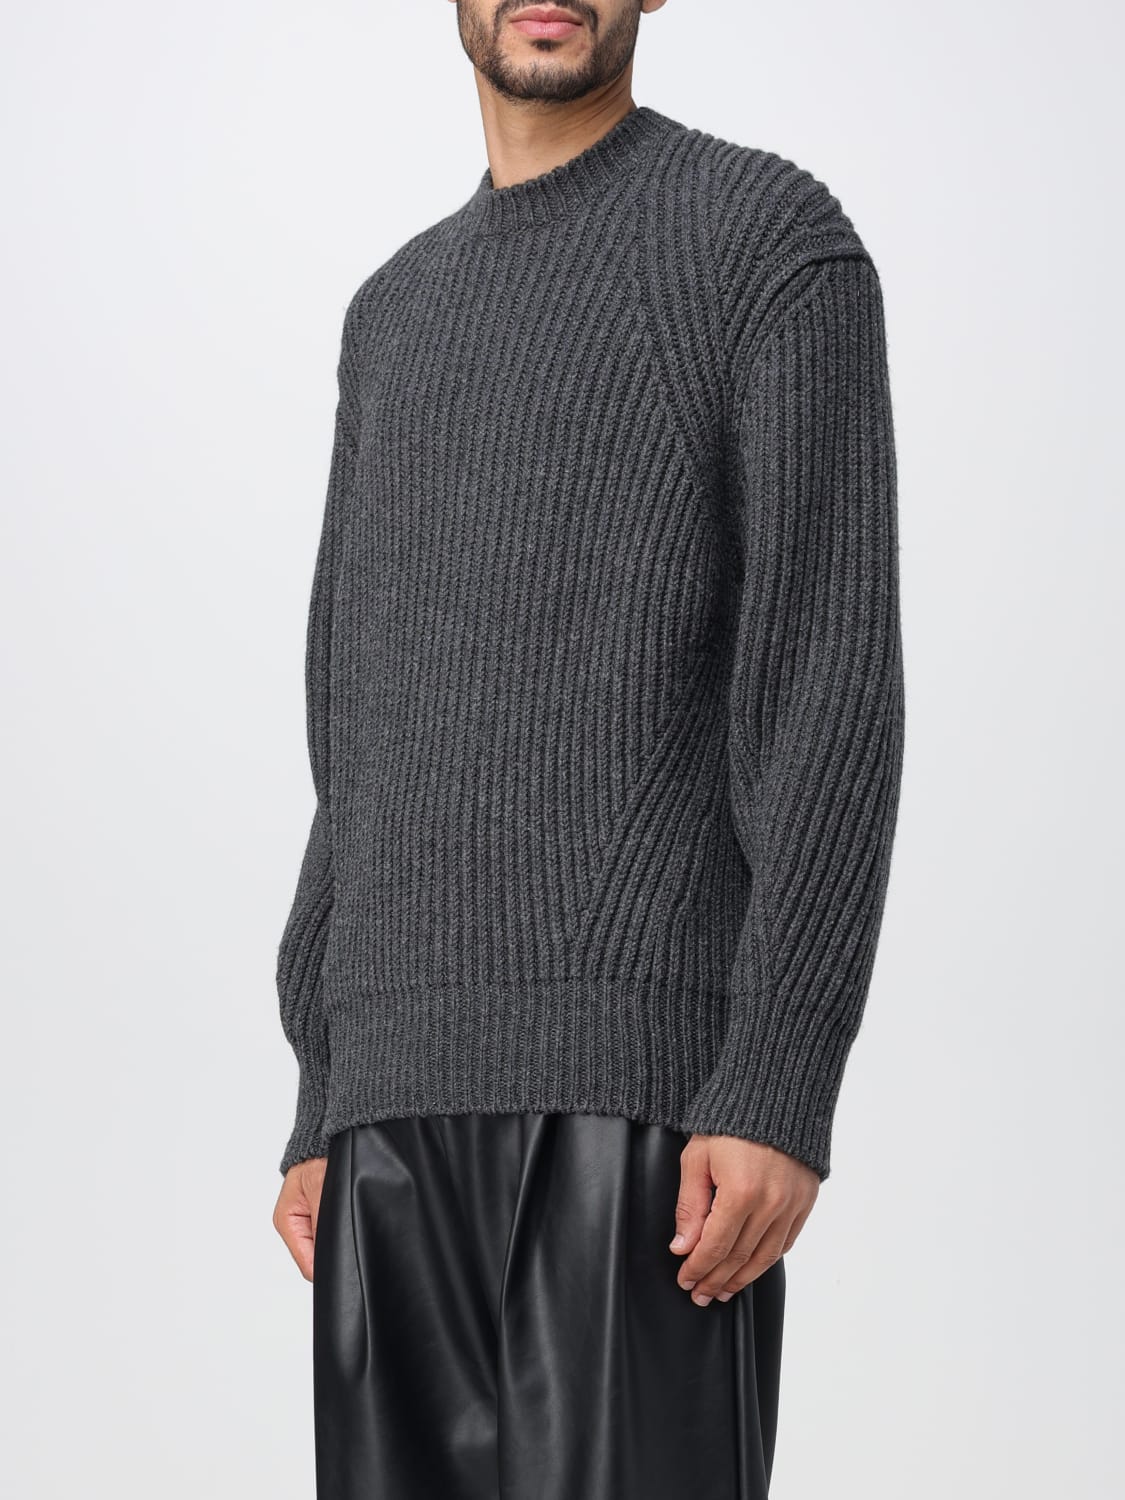 ALEXANDER MCQUEEN: sweater for man - Black | Alexander Mcqueen